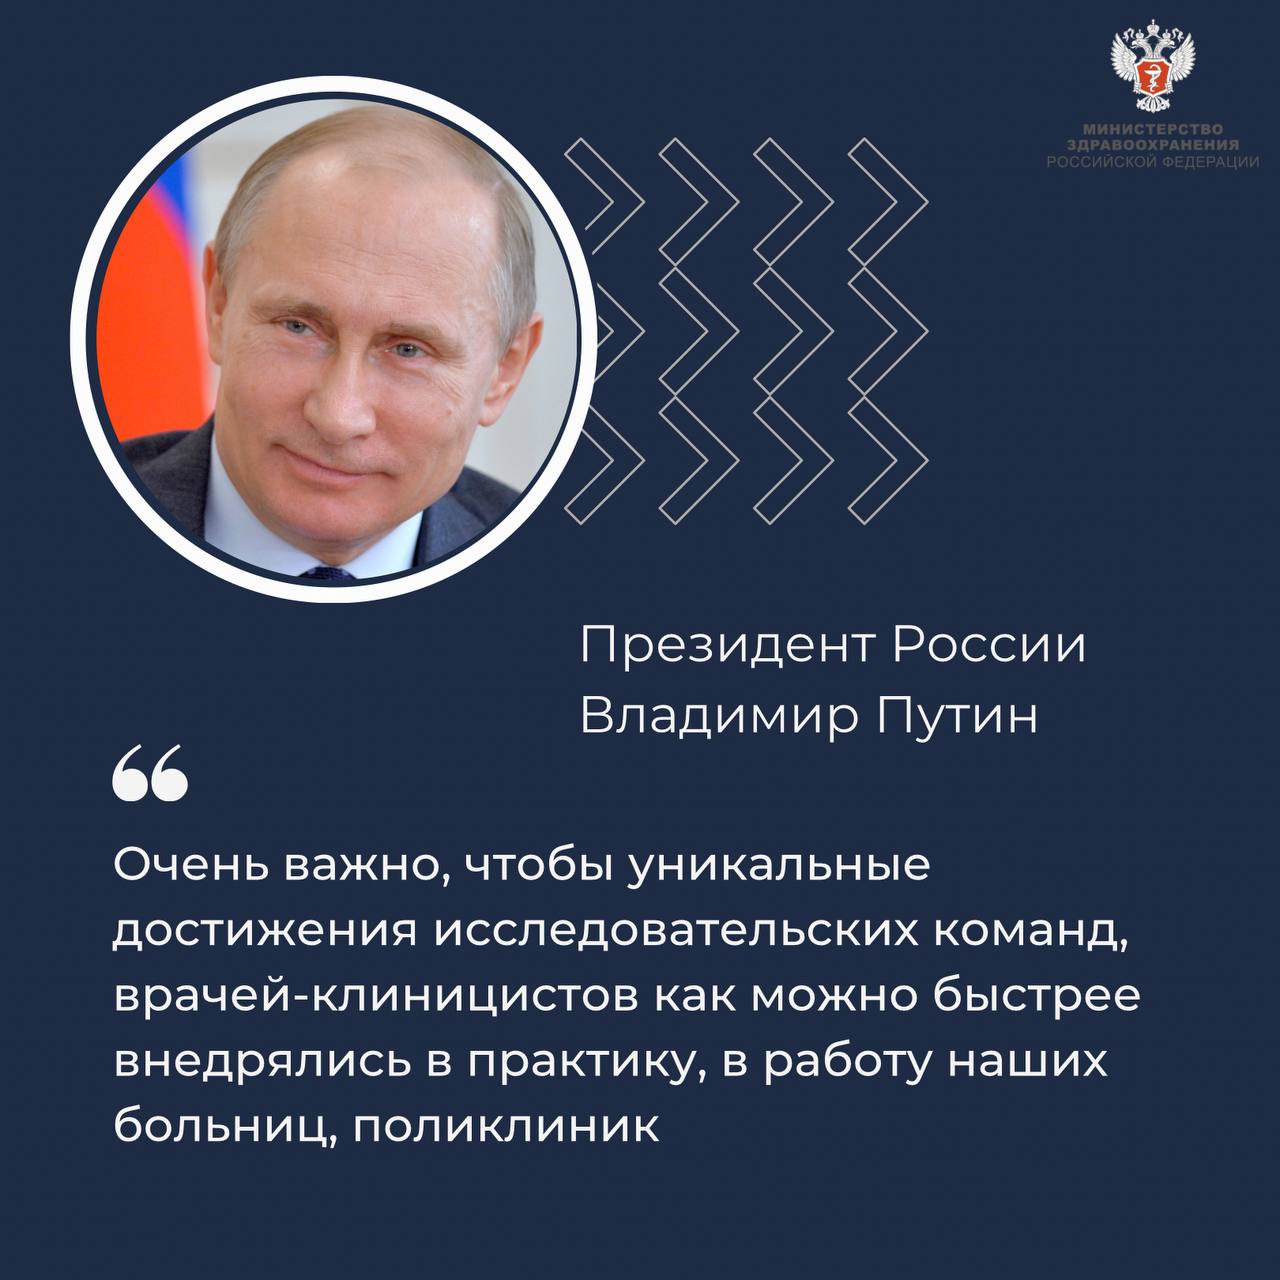 Владимир Путин: Ключевой приоритет — выстроить систему медицинской помощи вокруг человека, конкретного пациента